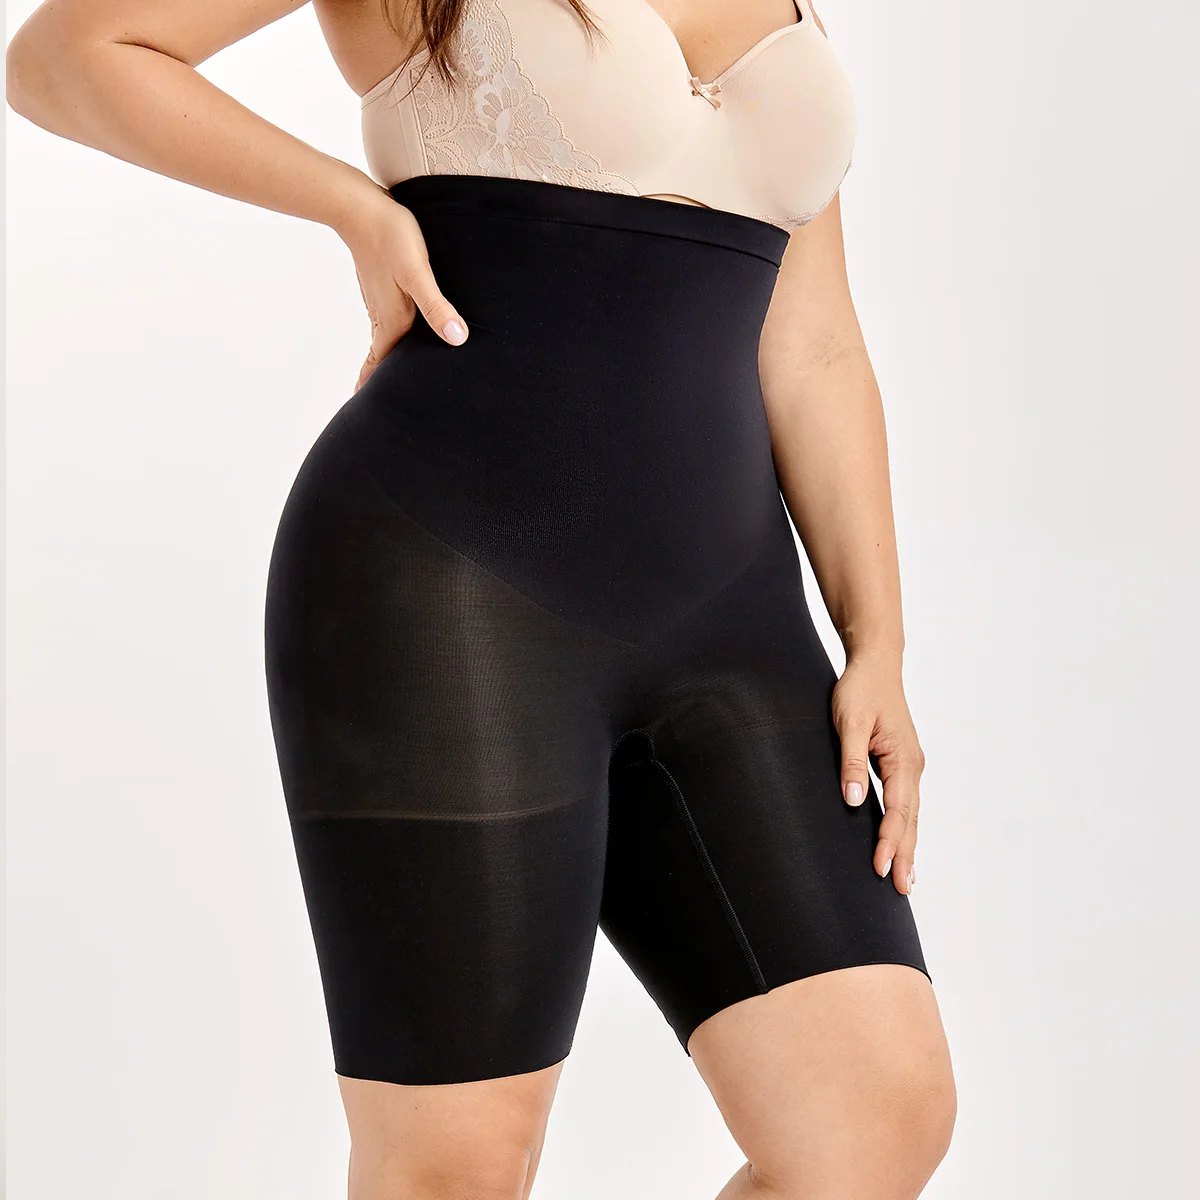 Женское моделирующее белье с высокой талией больших размеров - Цвет: Black01